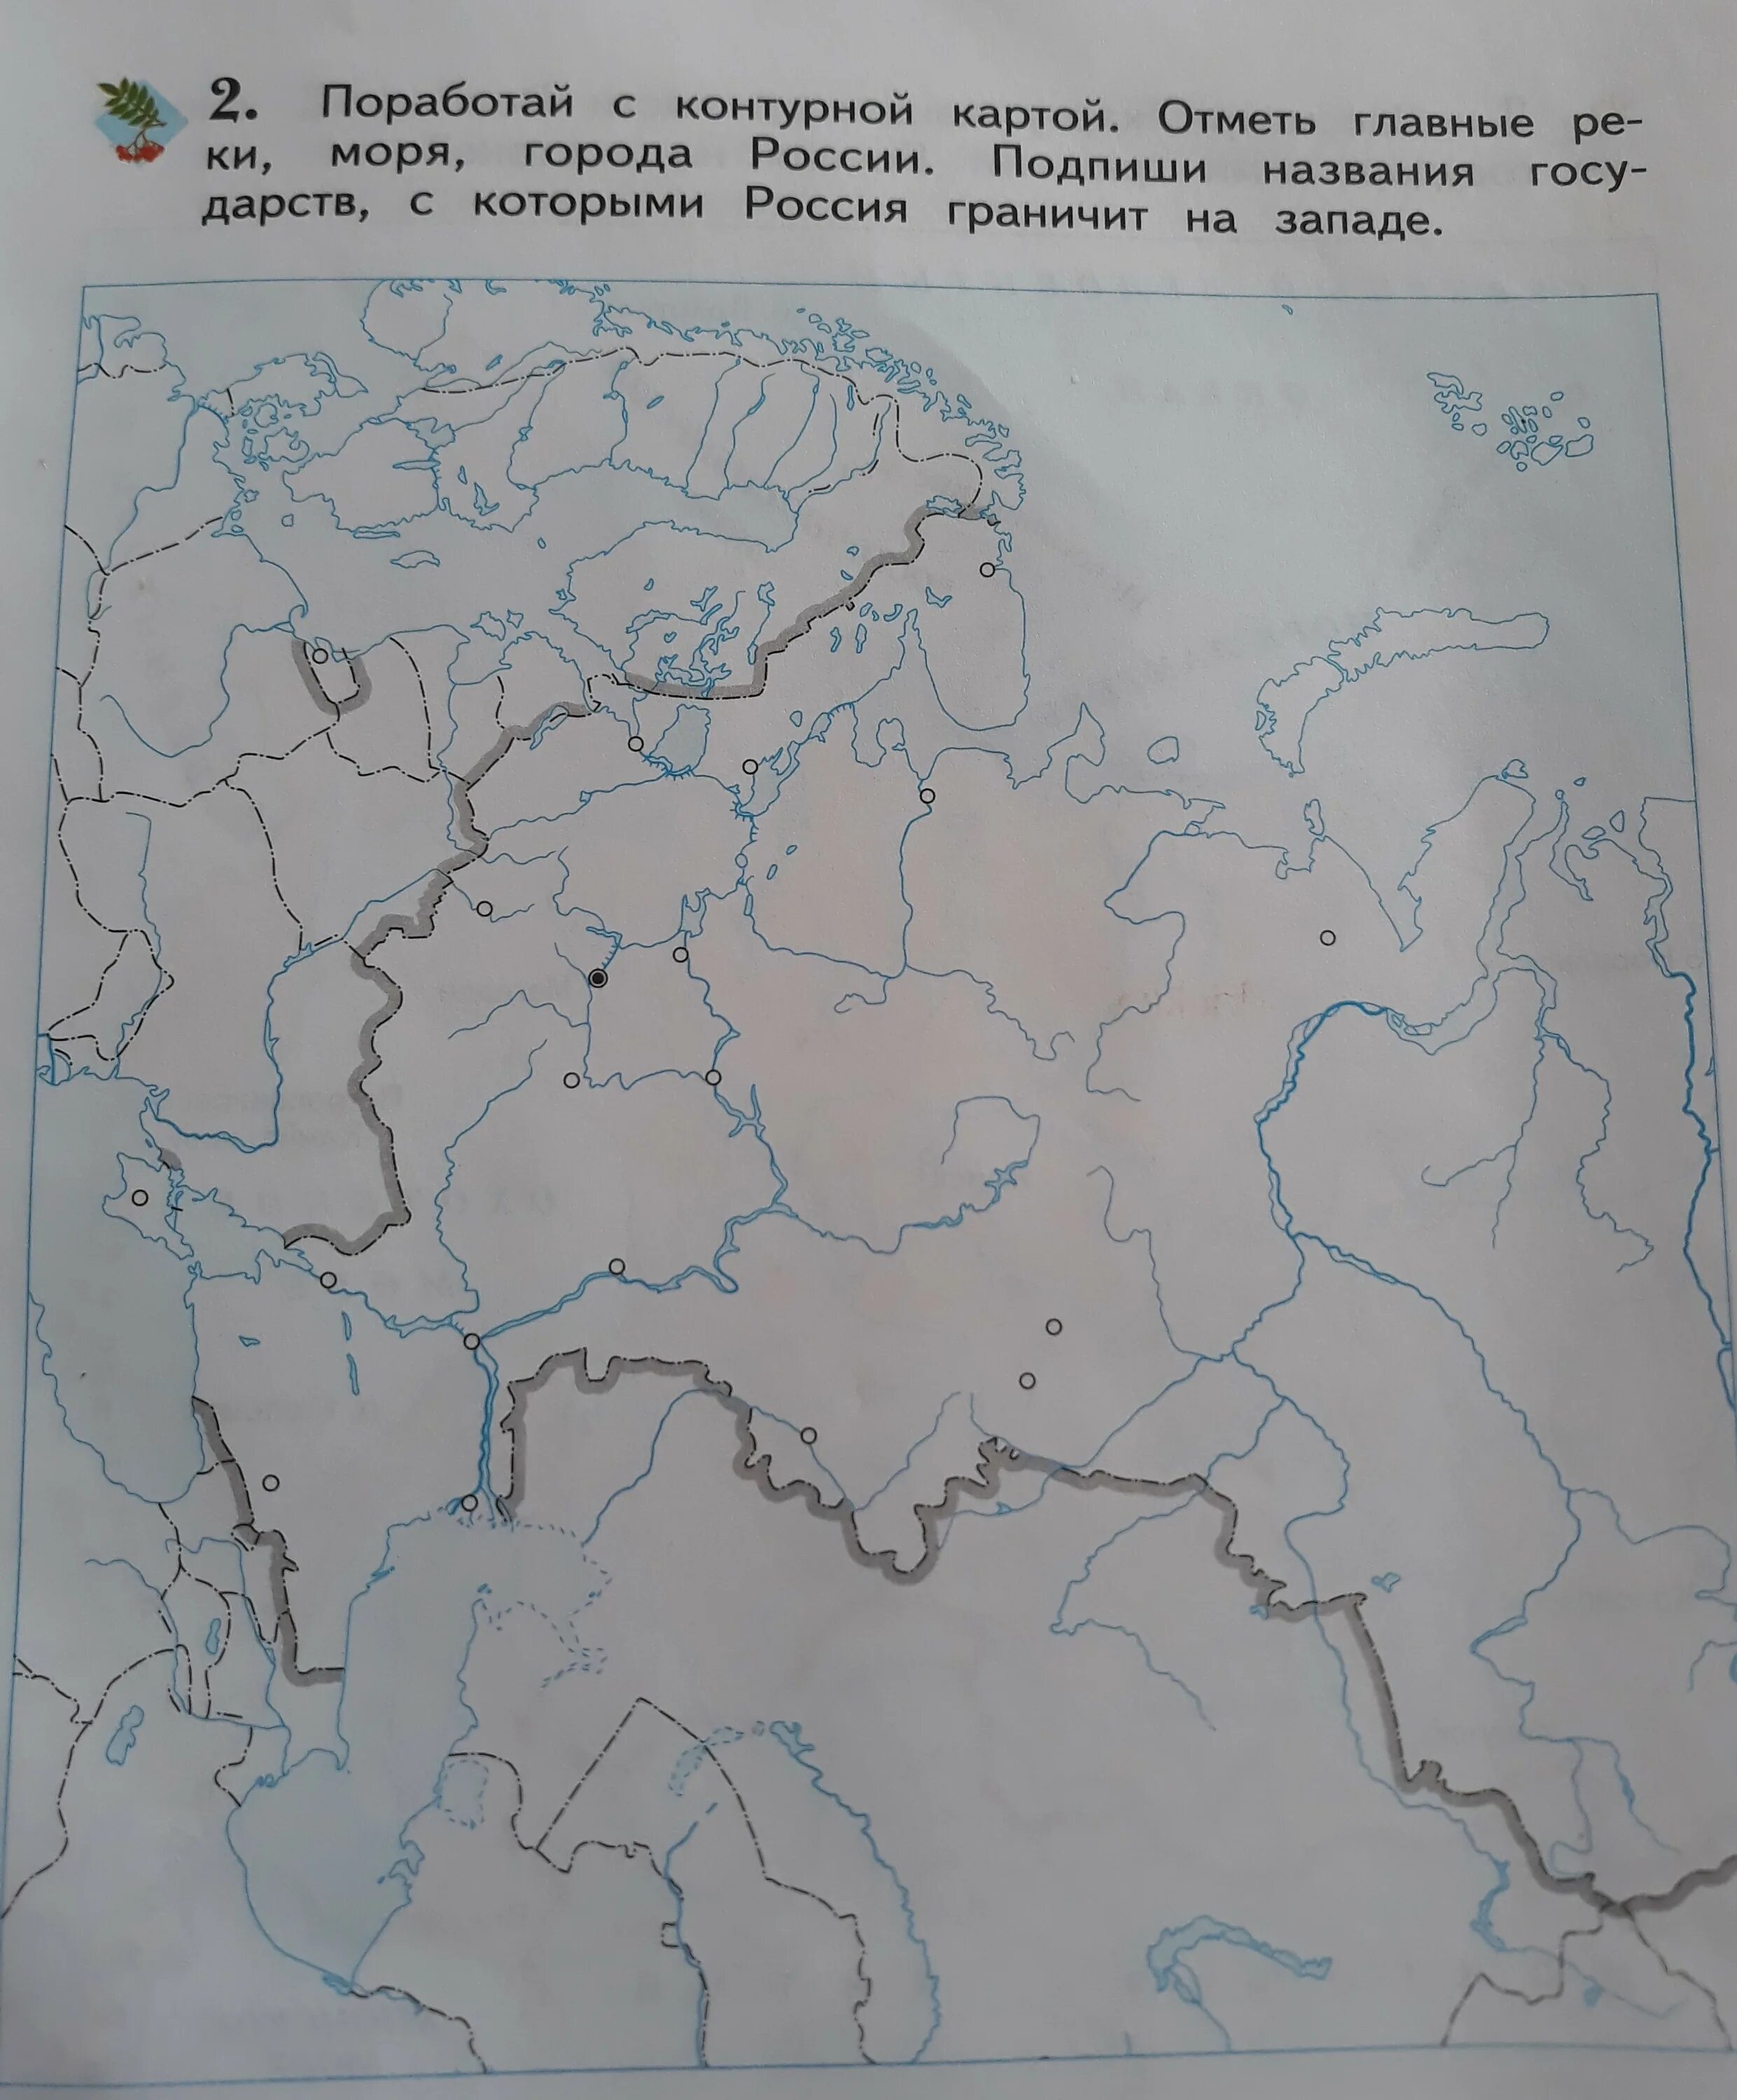 Контурная карта россии подписанные города. Работа с контурной картой. Поработаем с контурной картой. Контурная карта подписанная. Работа с кон урнрой картой.